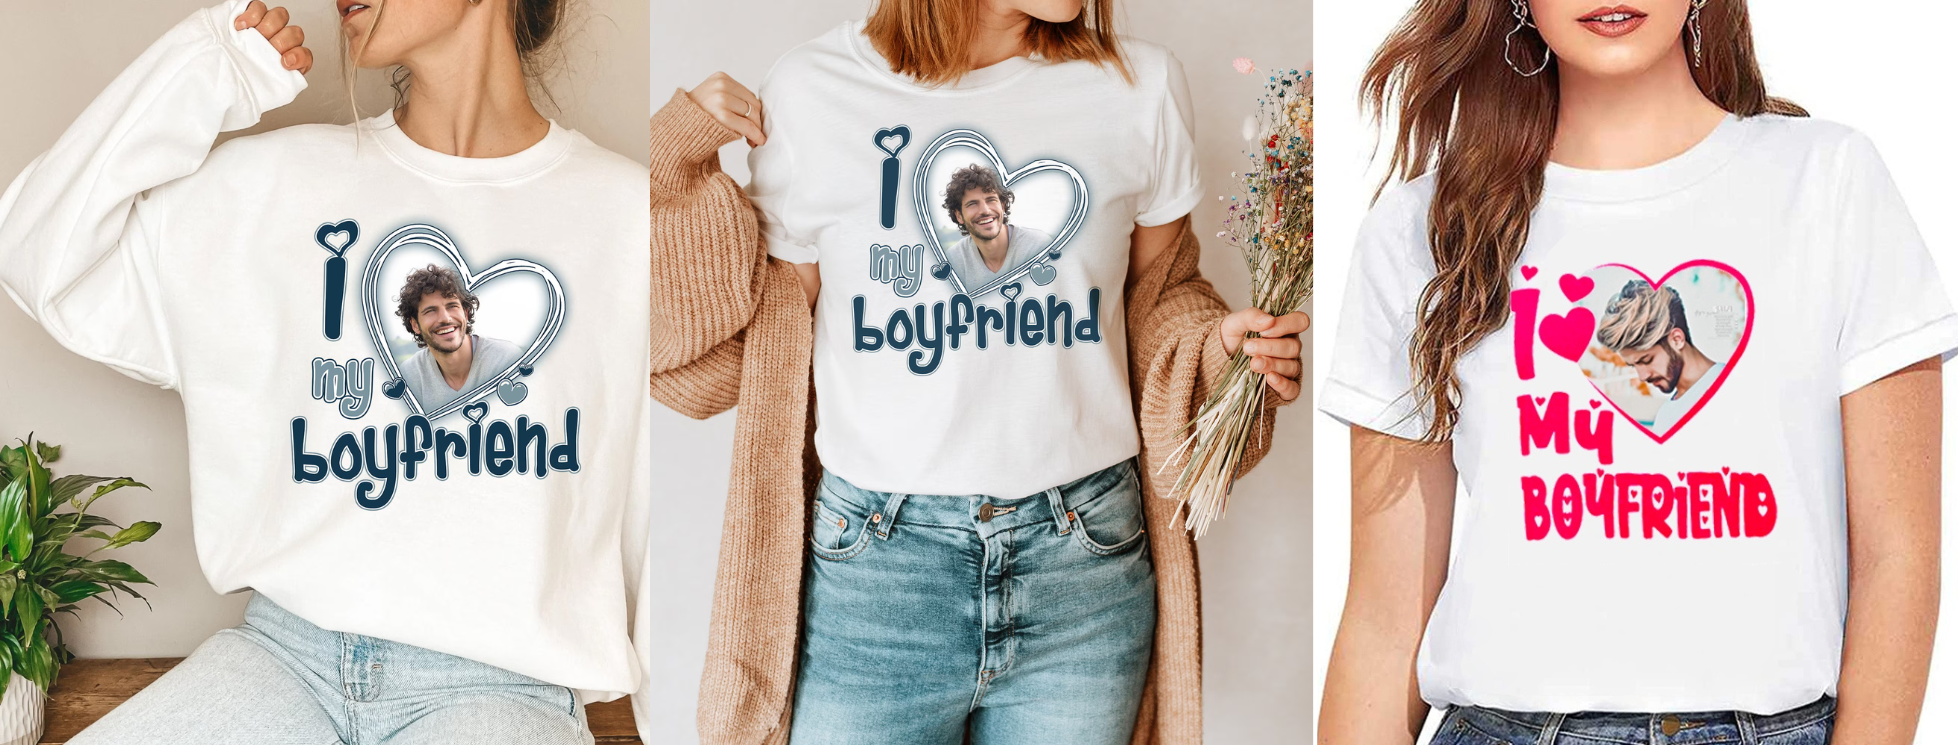 i-love-my-boyfriend-shirts-banner